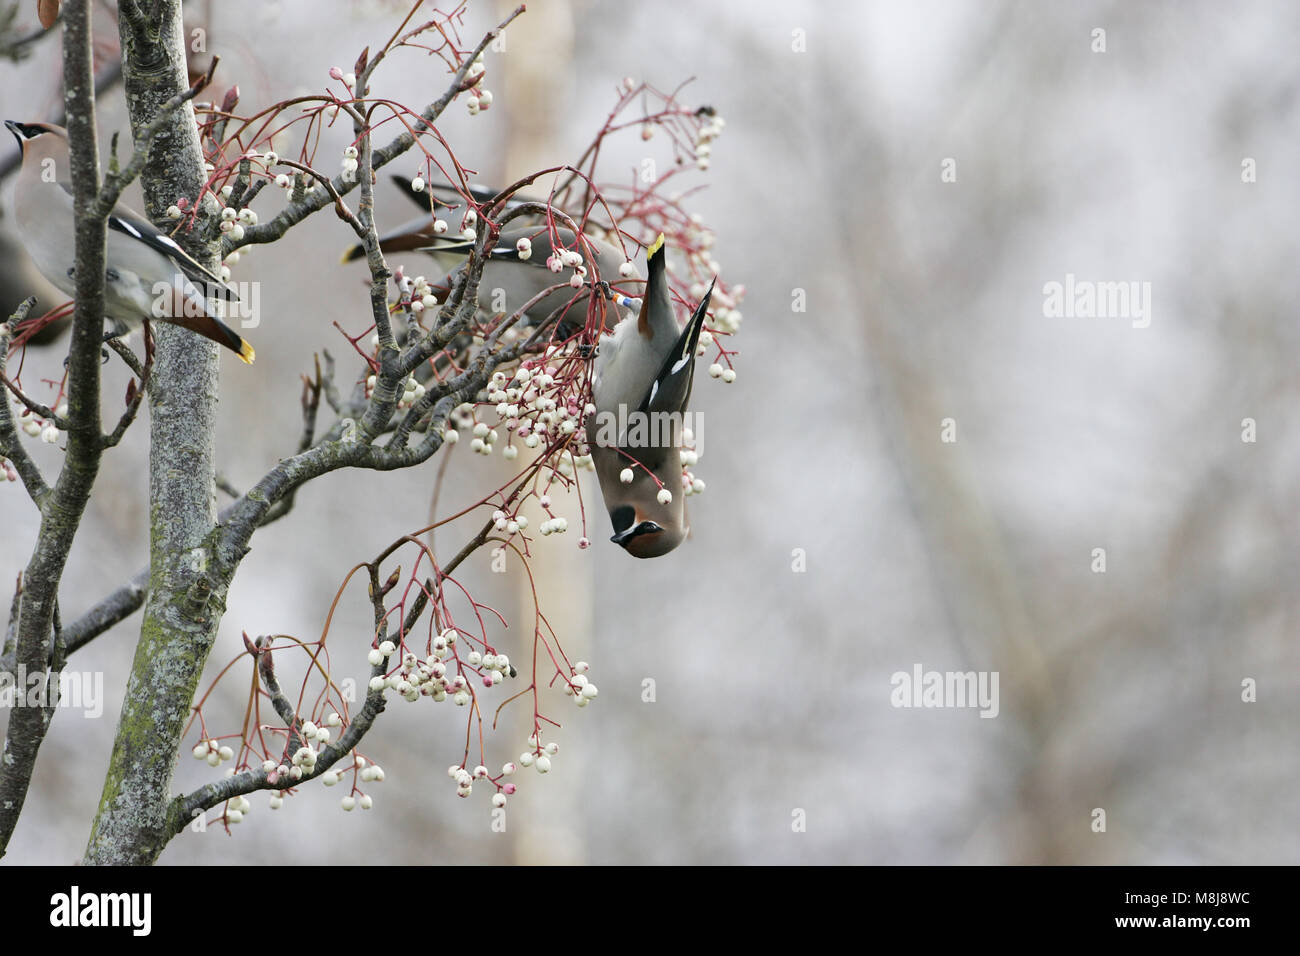 Jaseur boréal Bombycilla garrulus nourrir les oiseaux bagués en couleur sur les baies du Cachemire rowan Sorbus cashmiriana près de Romsey Hampshire Angleterre Banque D'Images